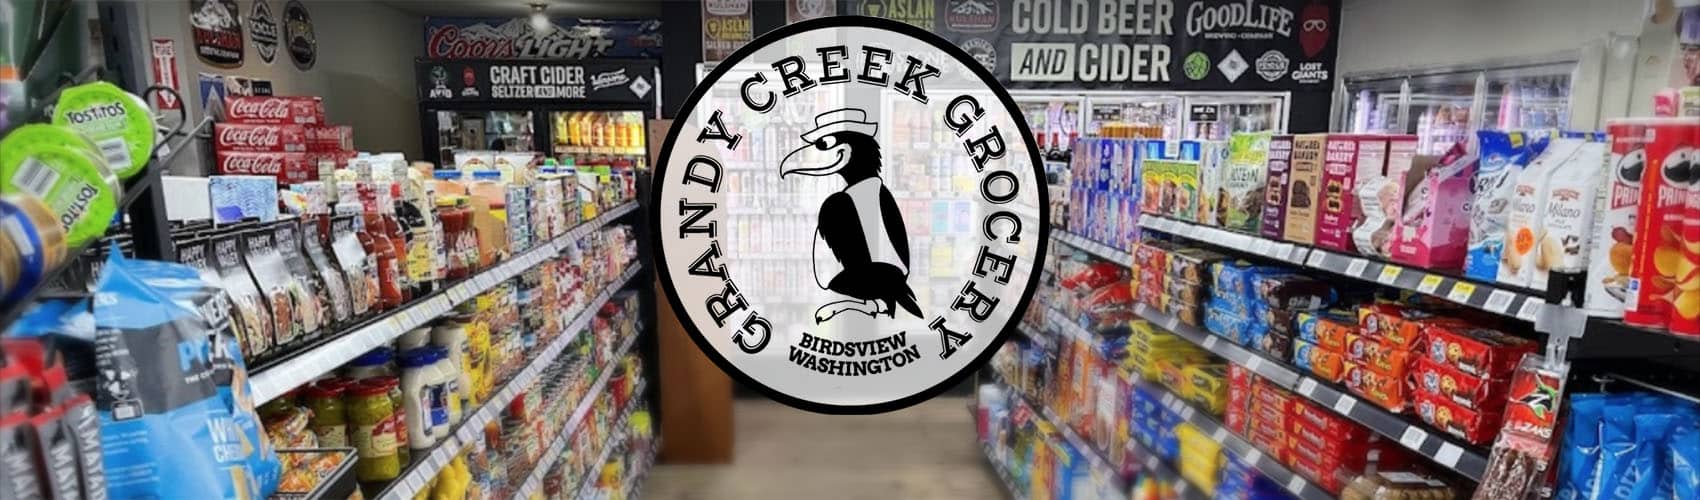 Grady Creek Grocery inside with logo